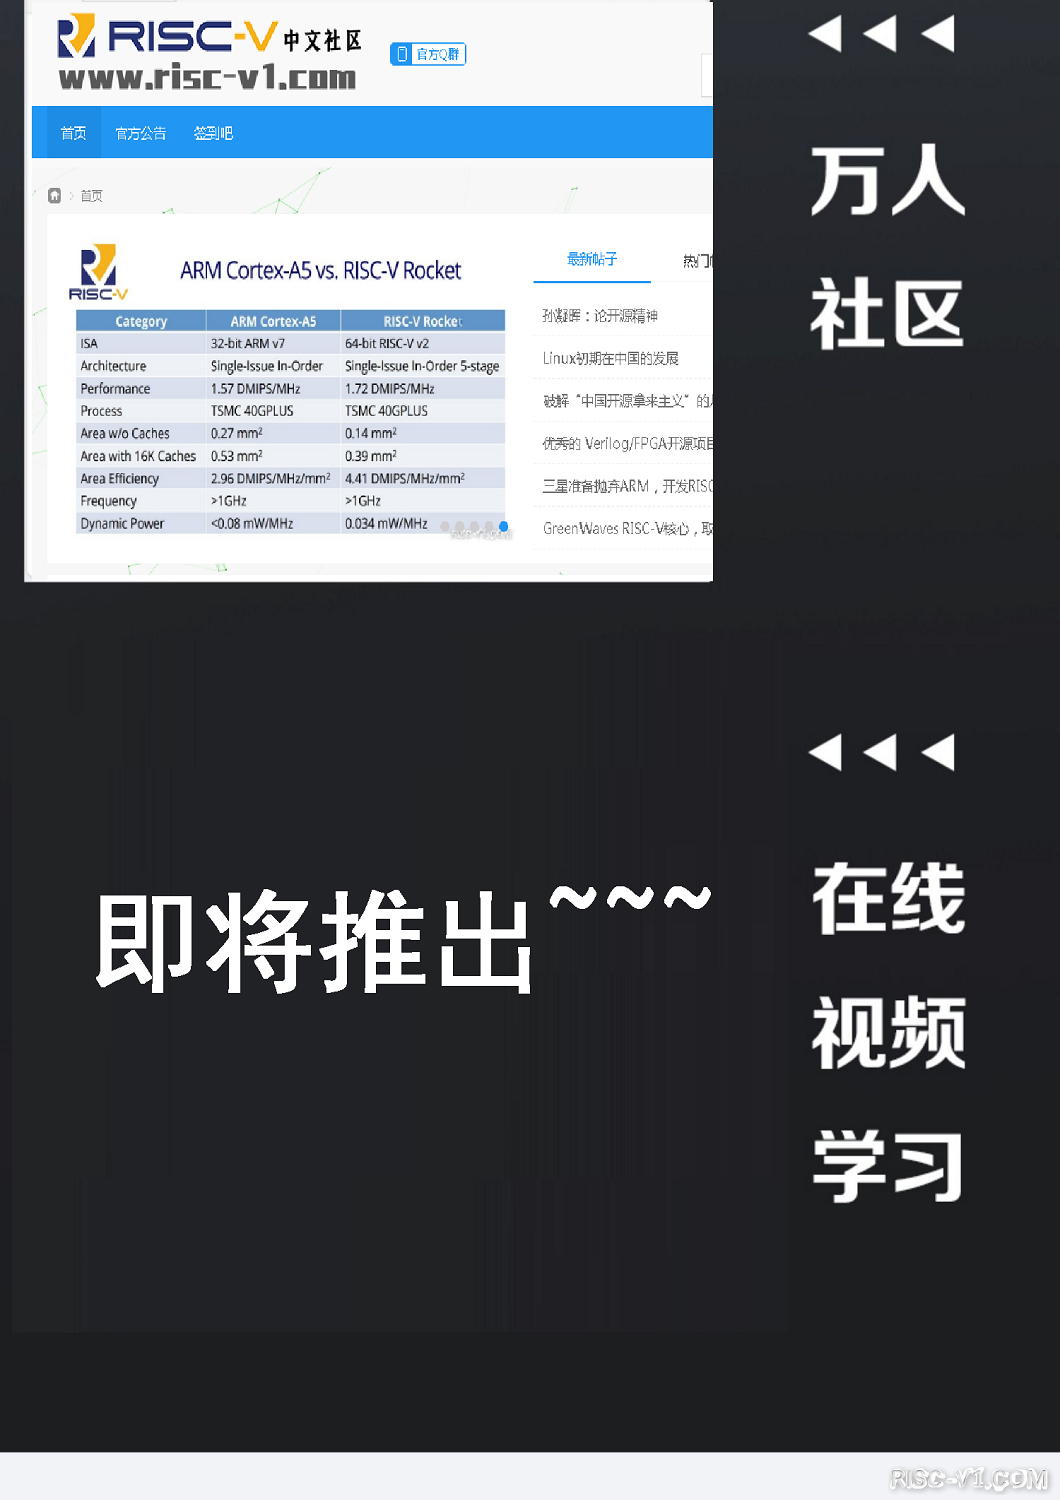 RISC-V商品专区-RISC-Vduino Boardrisc-v单片机中文社区(8)